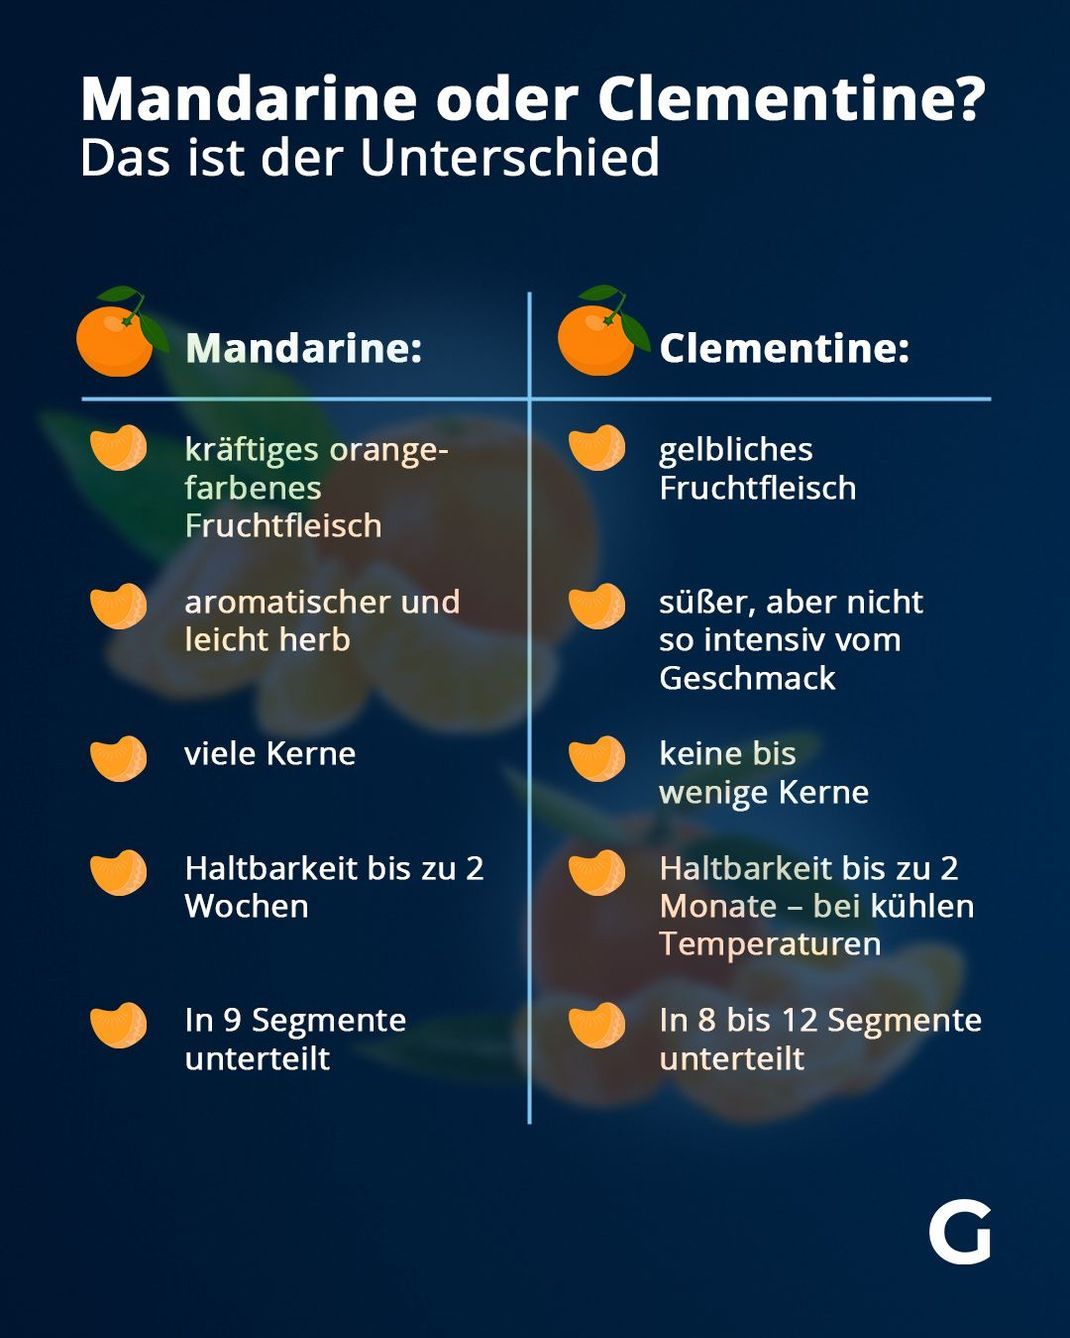 Das sind die Unterschiede zwischen Mandarine und Clementine